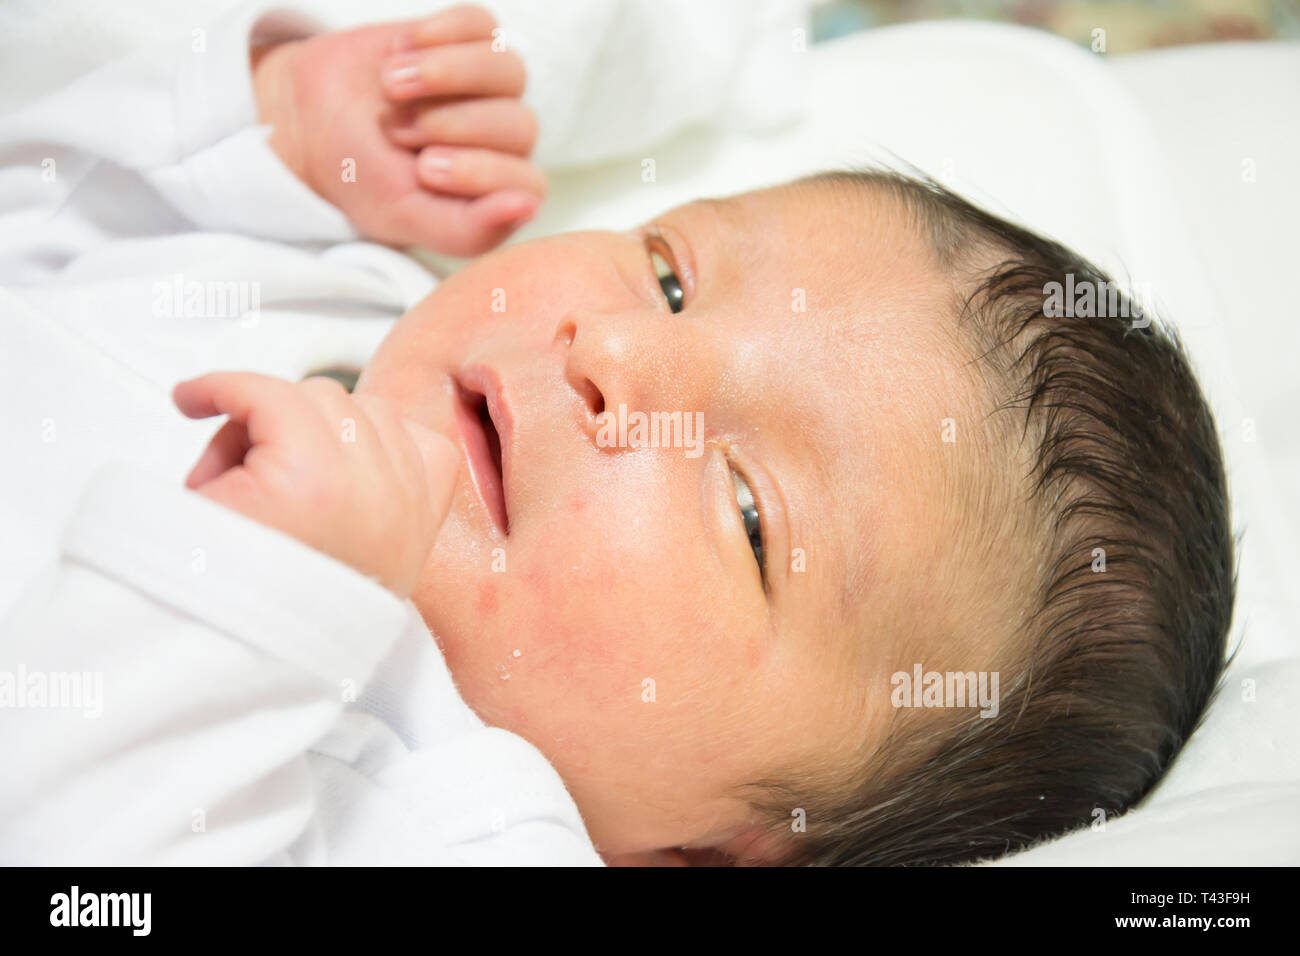 Neugeborenes Baby Gesicht mit Gelbsucht Porträt in einem weißen Tuch,  medizinische Versorgung benötigen Stockfotografie - Alamy